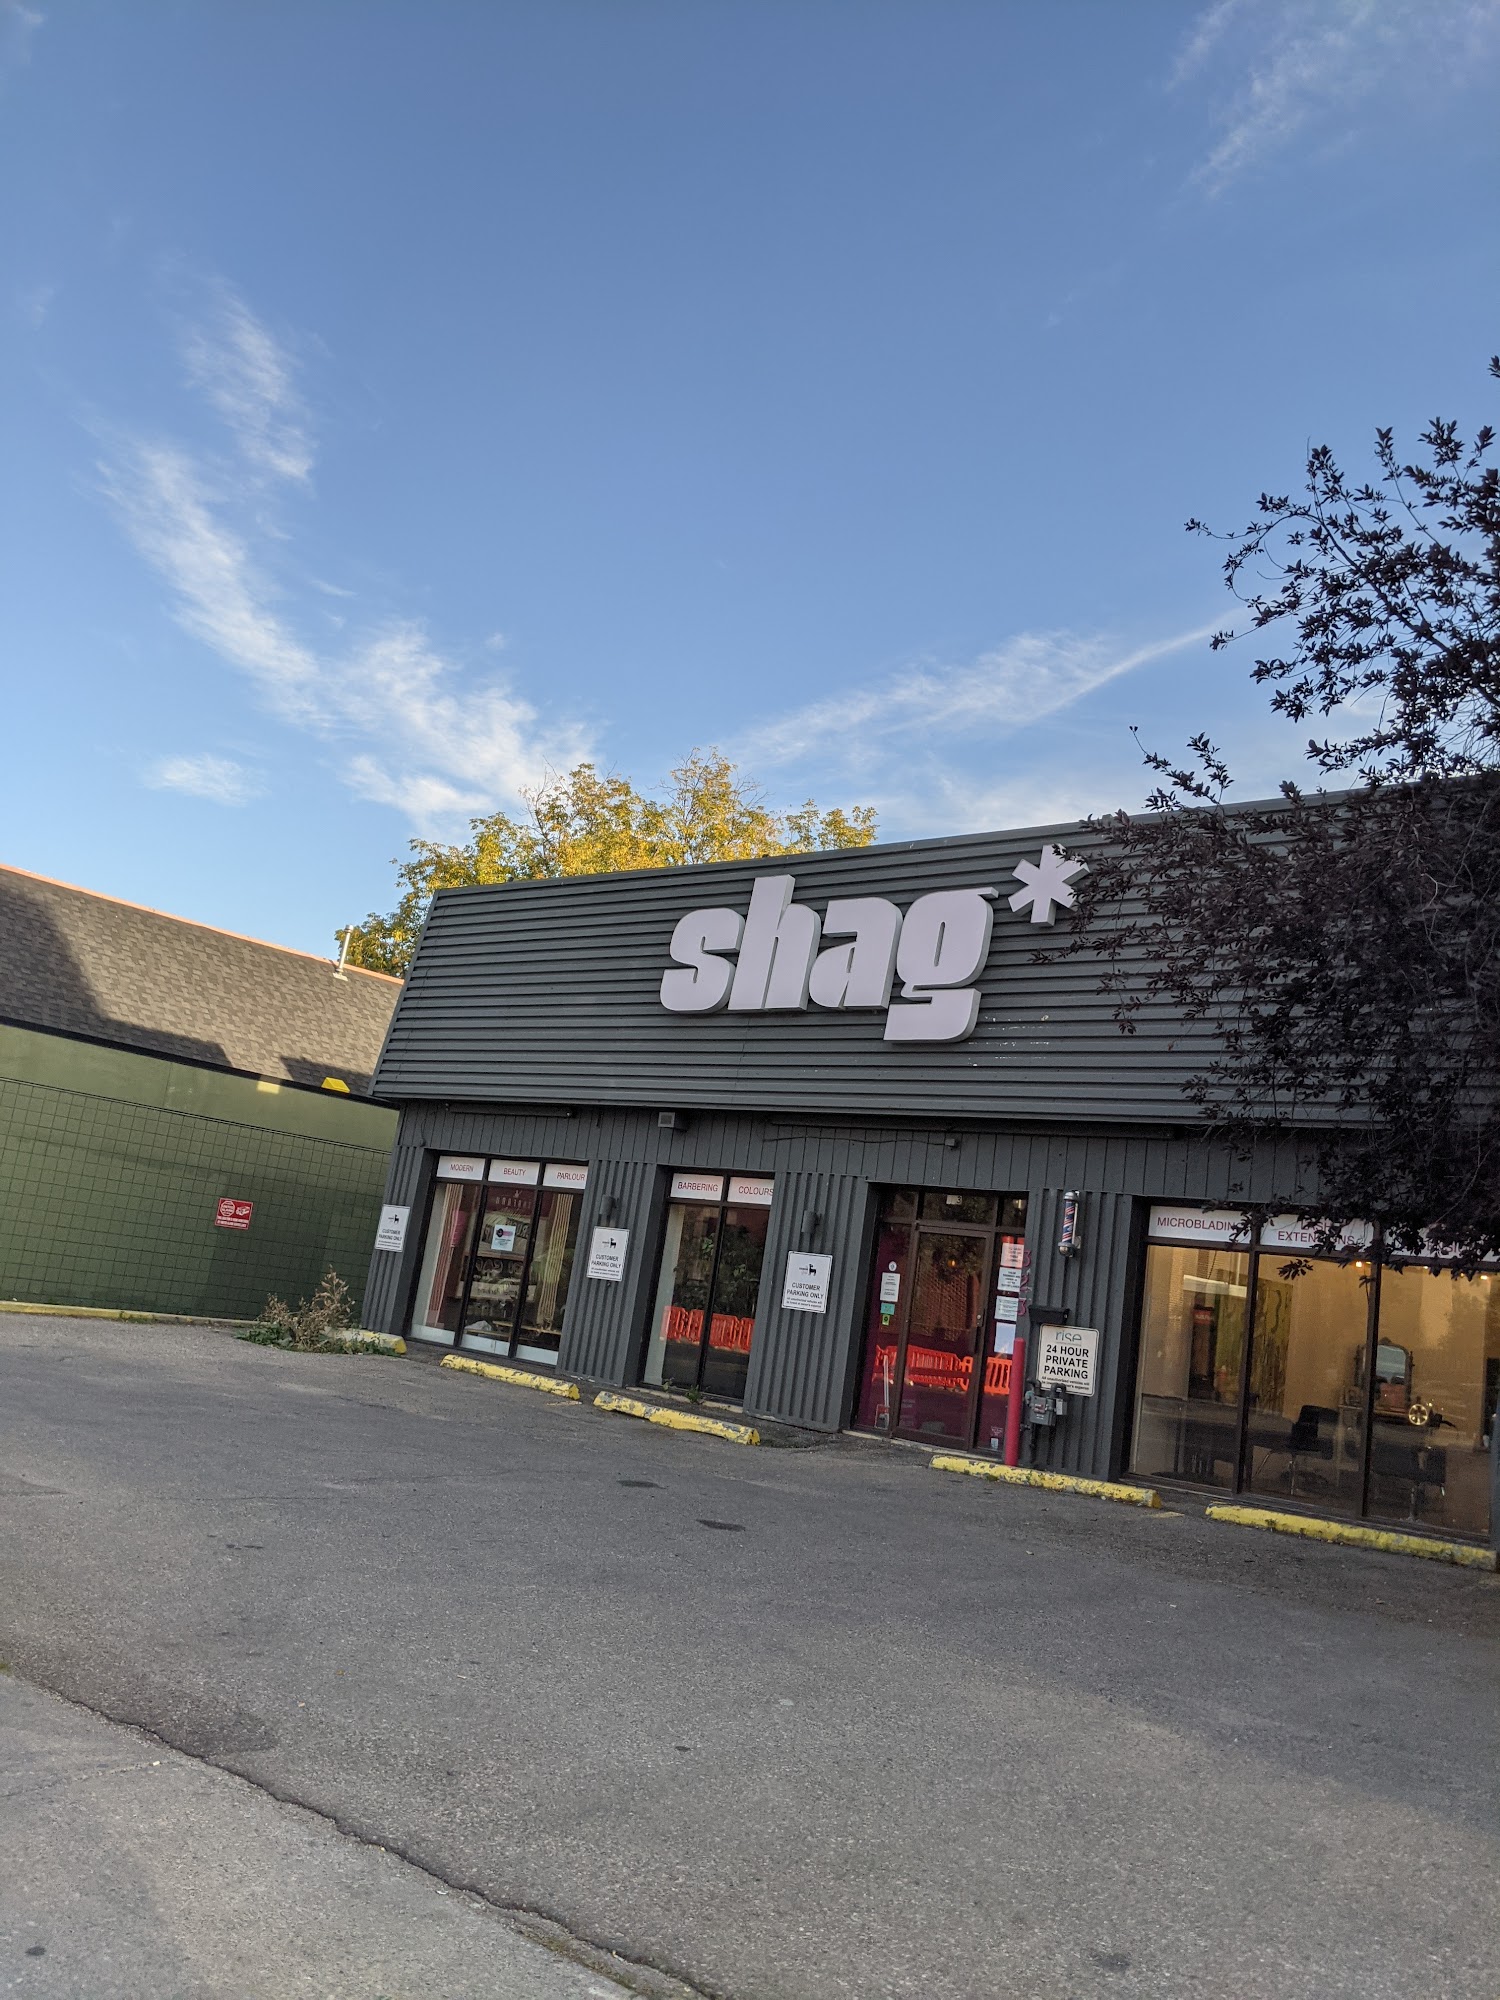 Shag Salon